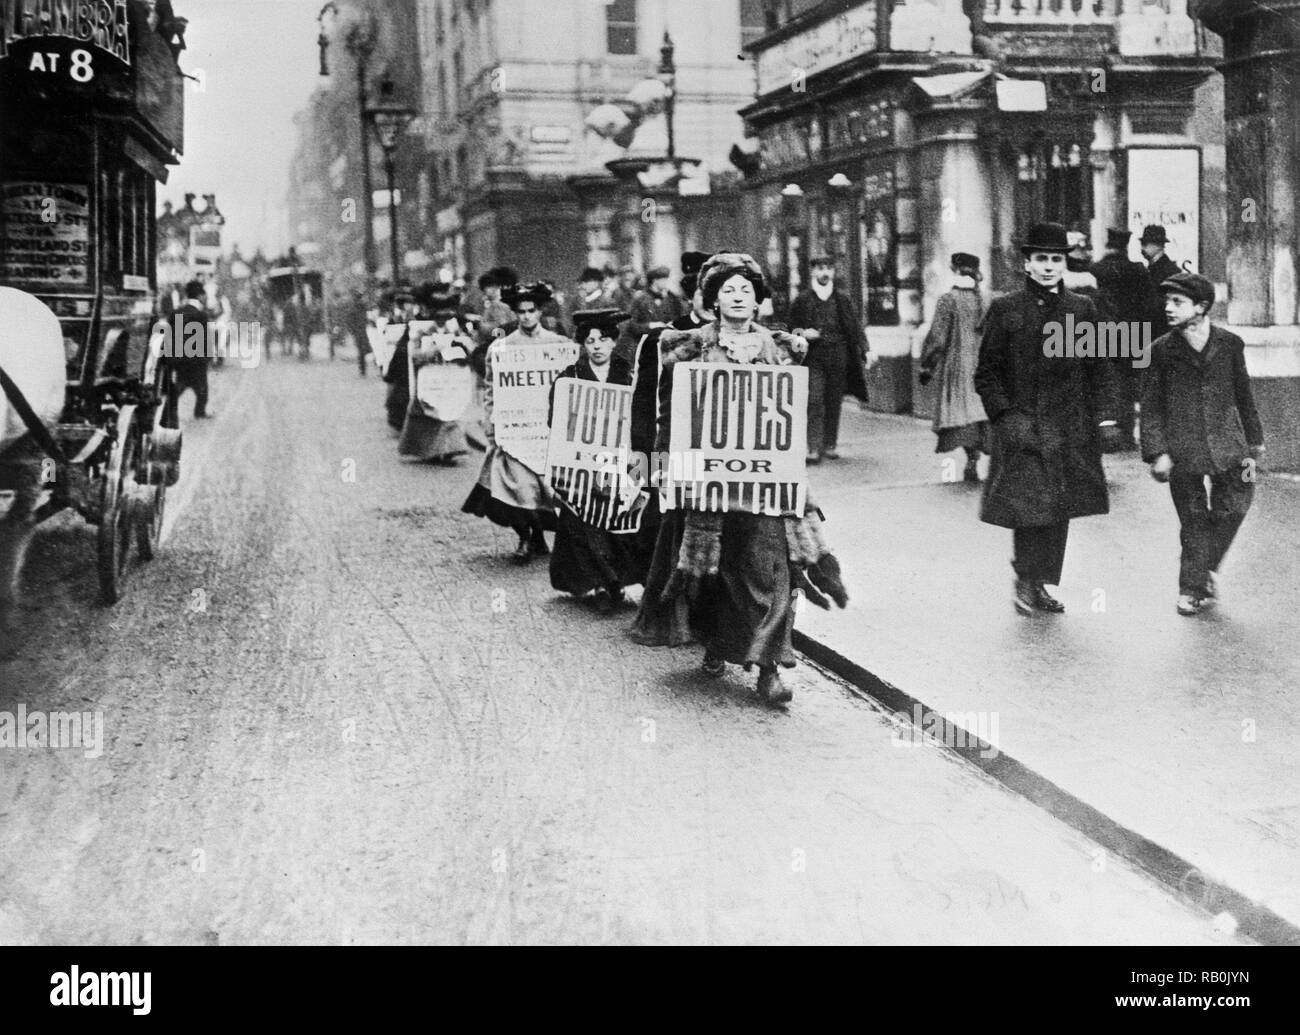 Foto wurde am 23. November 1907 berücksichtigt. Die Women's Freedom League gegen "Gesetze", in Großbritannien demonstrieren. Die Gruppe wurde 1907 von siebzig gegründet - sieben Mitglieder der Sozialen und Politischen Union (Wspu). Stockfoto